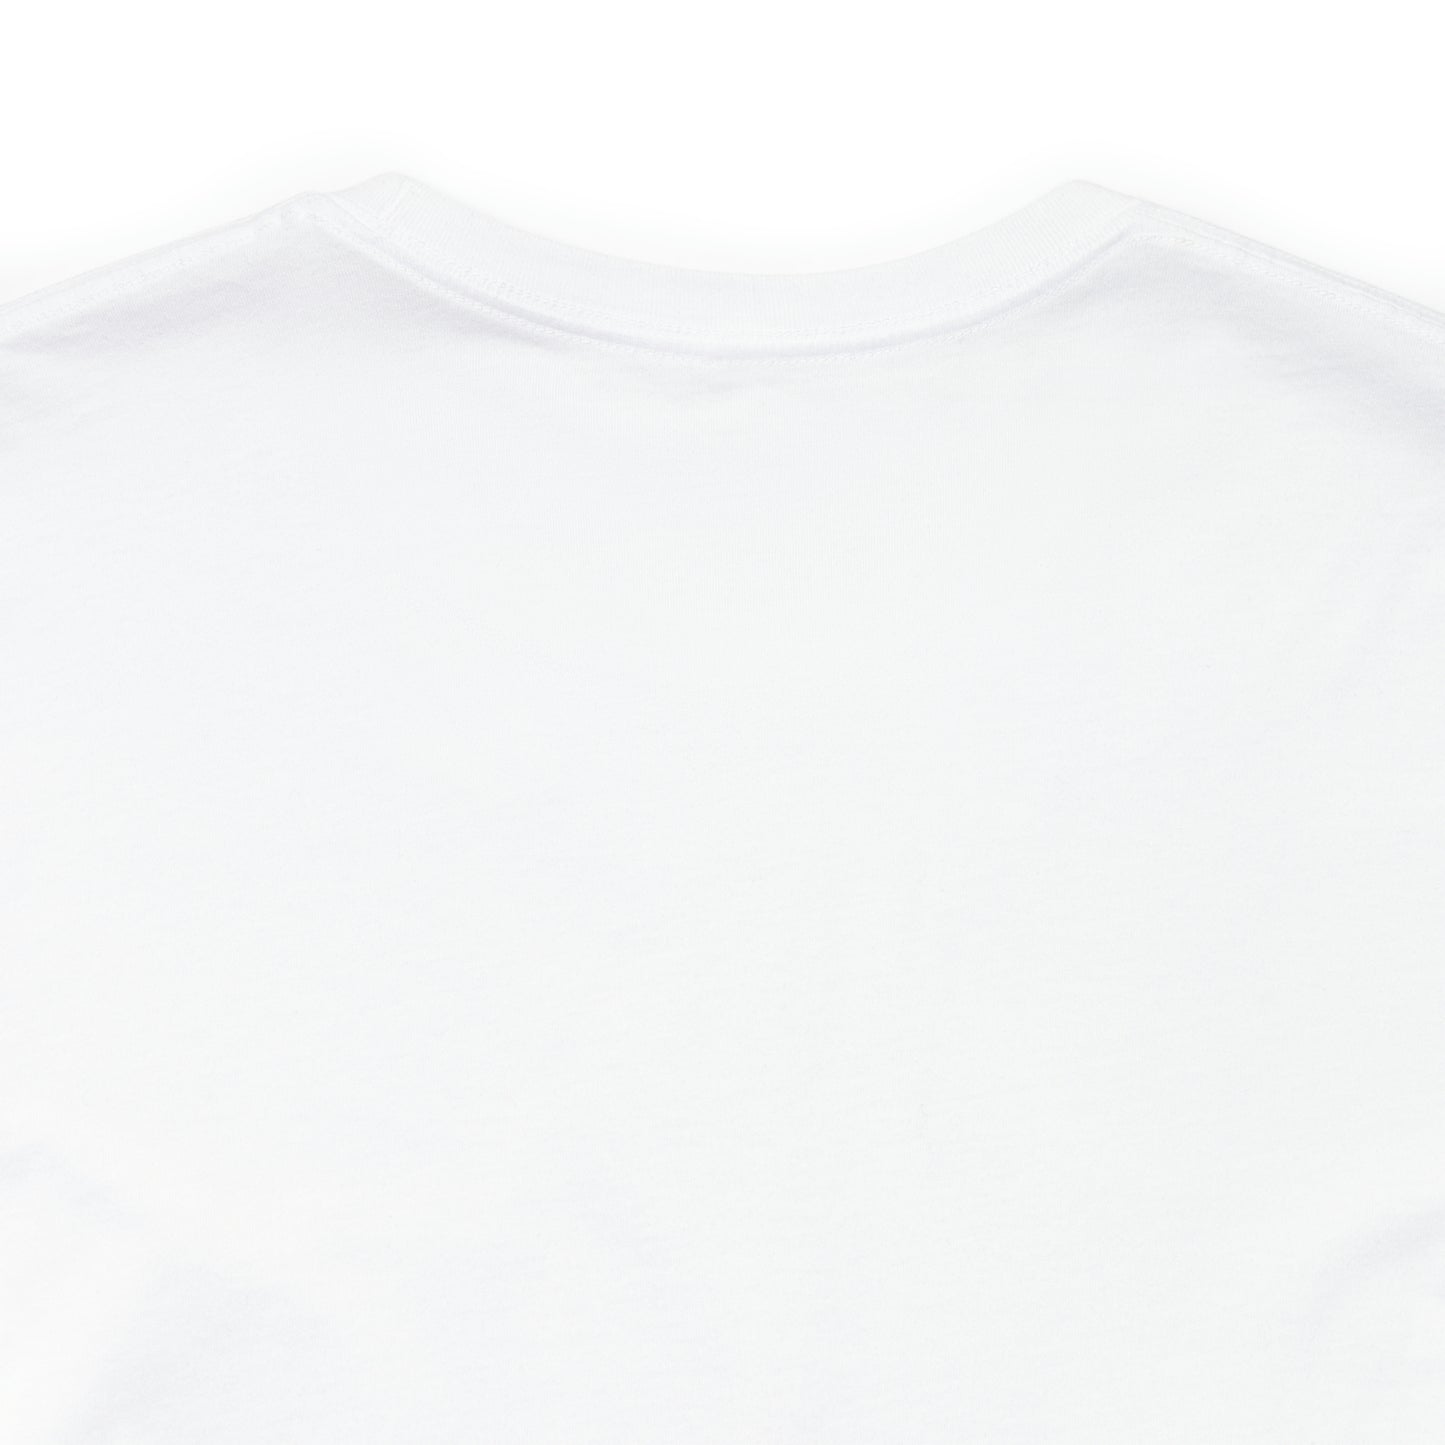 Unisex Boho Flower Design Tee - Comfortable & Stylish Short Sleeve Shirt